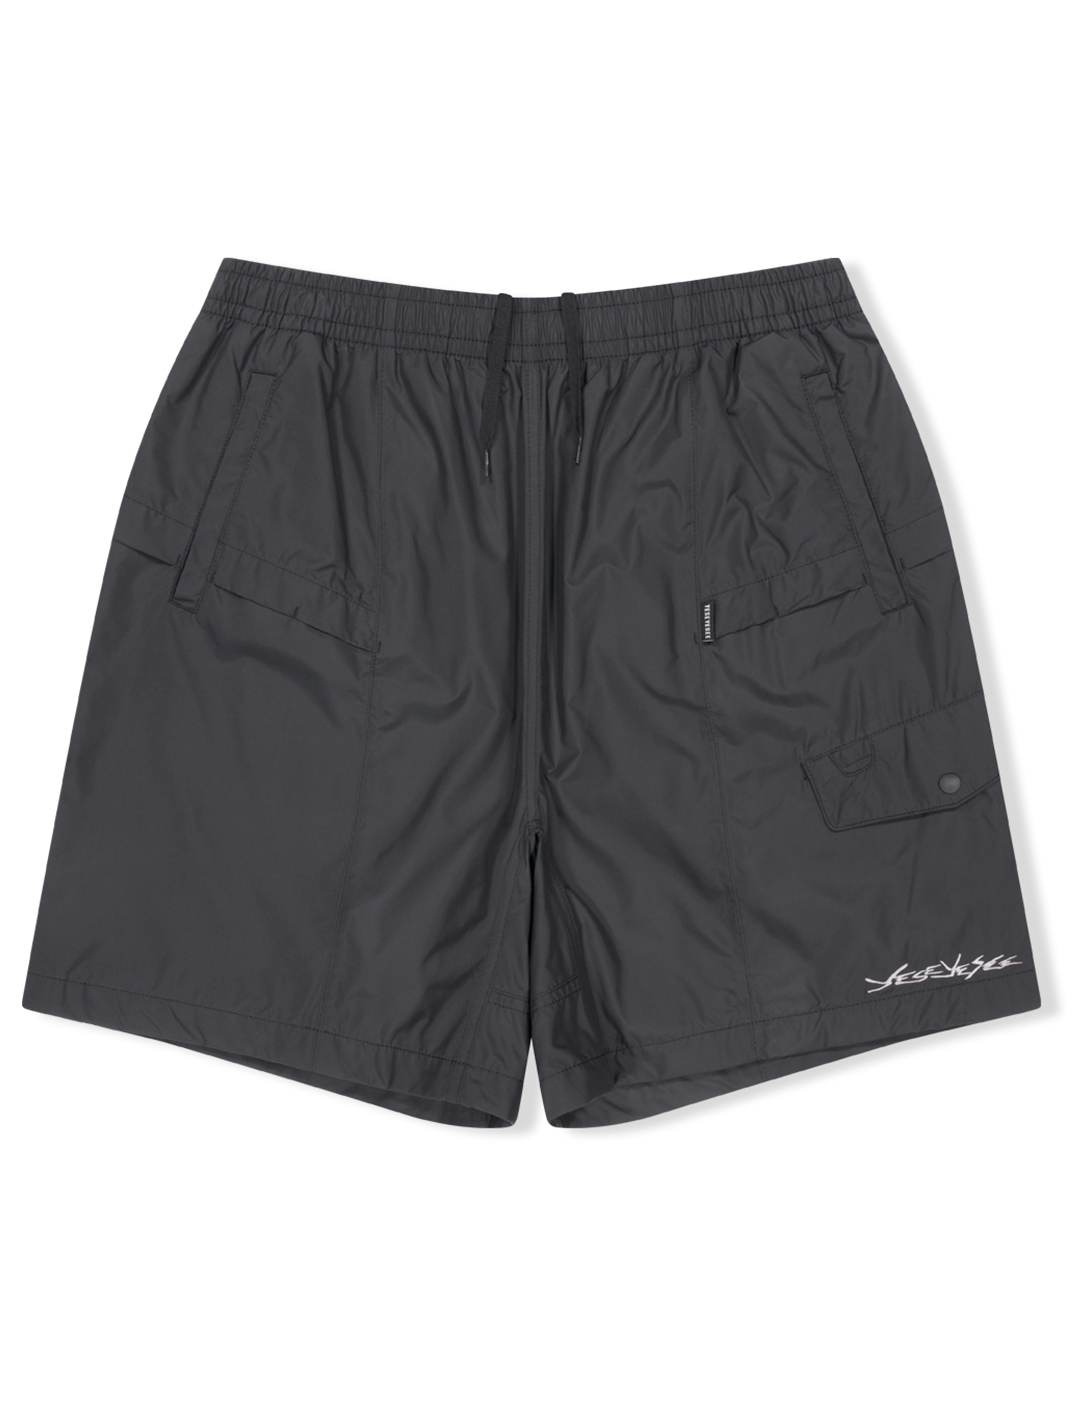 Paneled Comfort Shorts Black